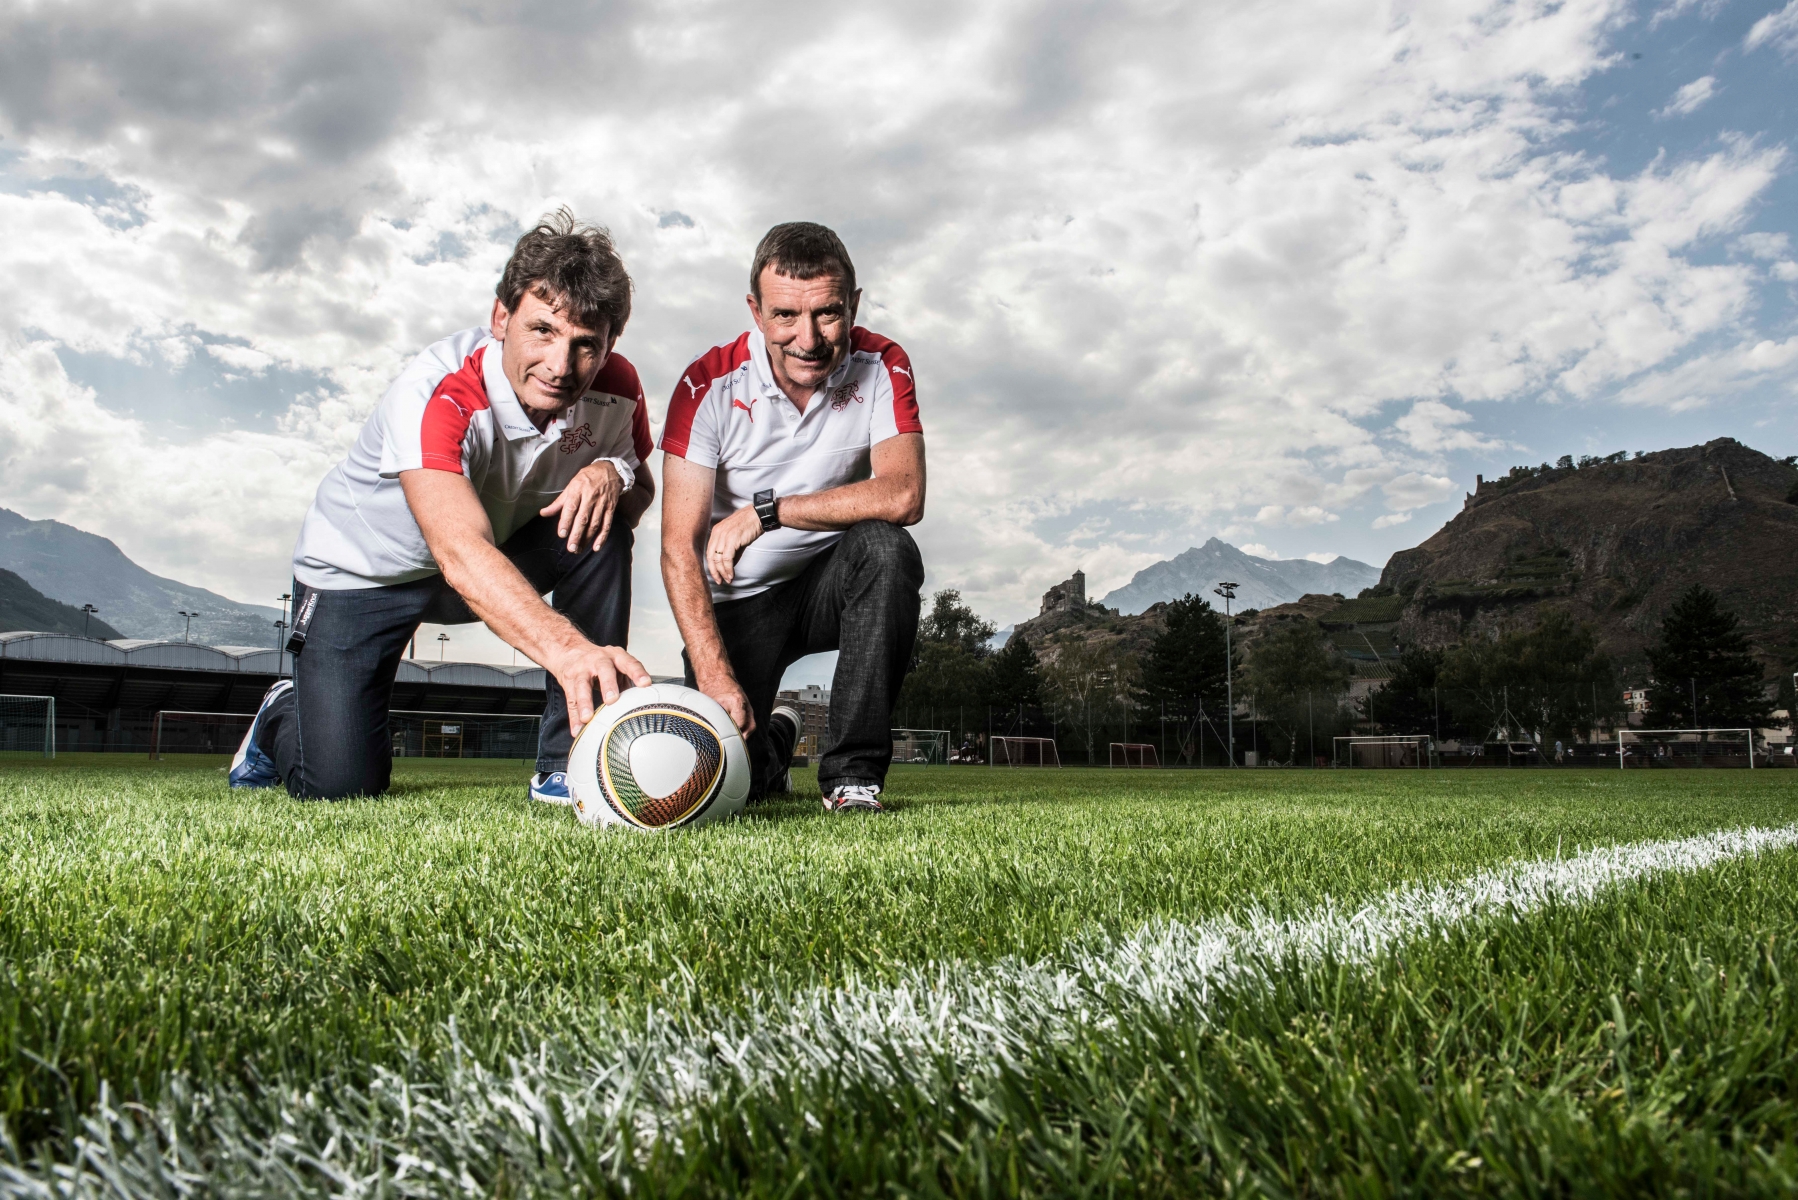 Nicolas Mathieu et Pierre Etienne Fournier, deux médecins valaisans qui rejoignent le staff de l'équipe de football Suisse.



Louis Dasselborne/Le Nouvelliste